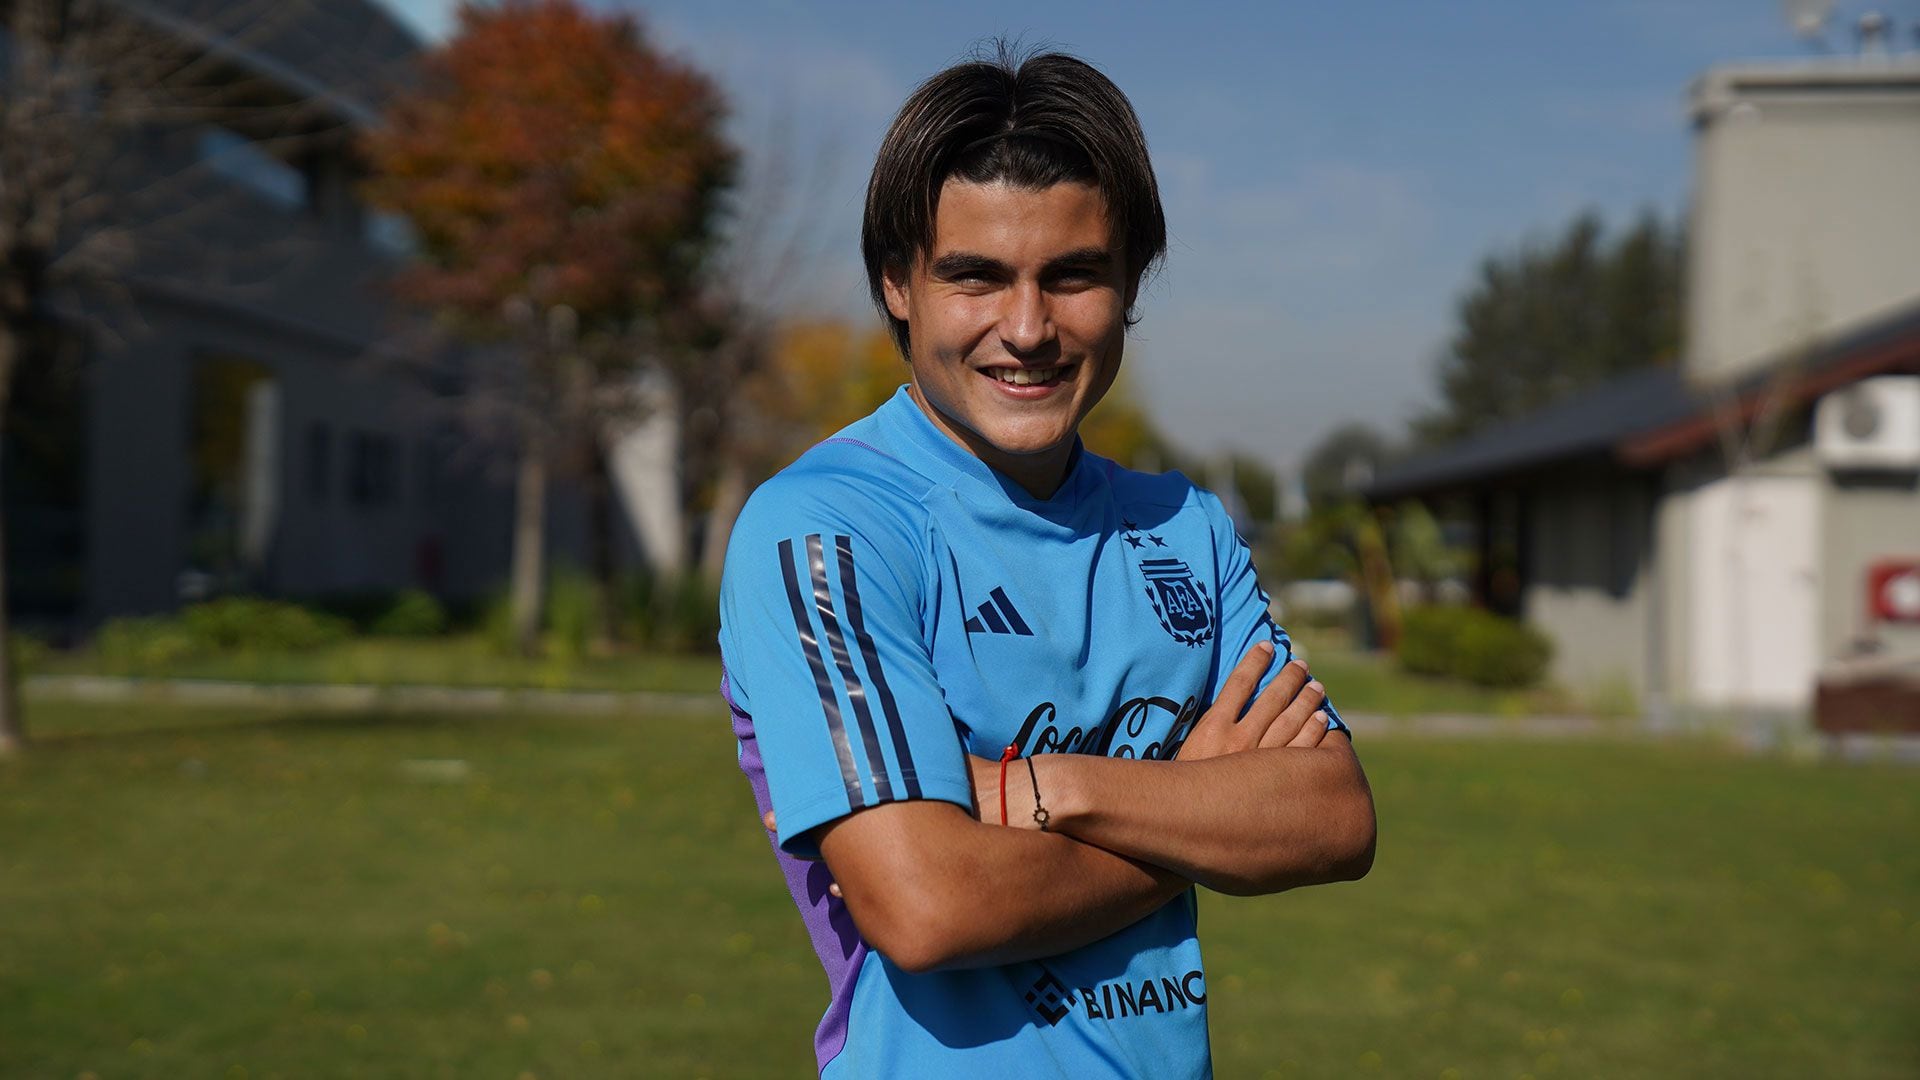 El juvenil nacido en México, ha expresado su clara preferencia y sueño por defender los colores de Argentina
(Matias Arbotto)